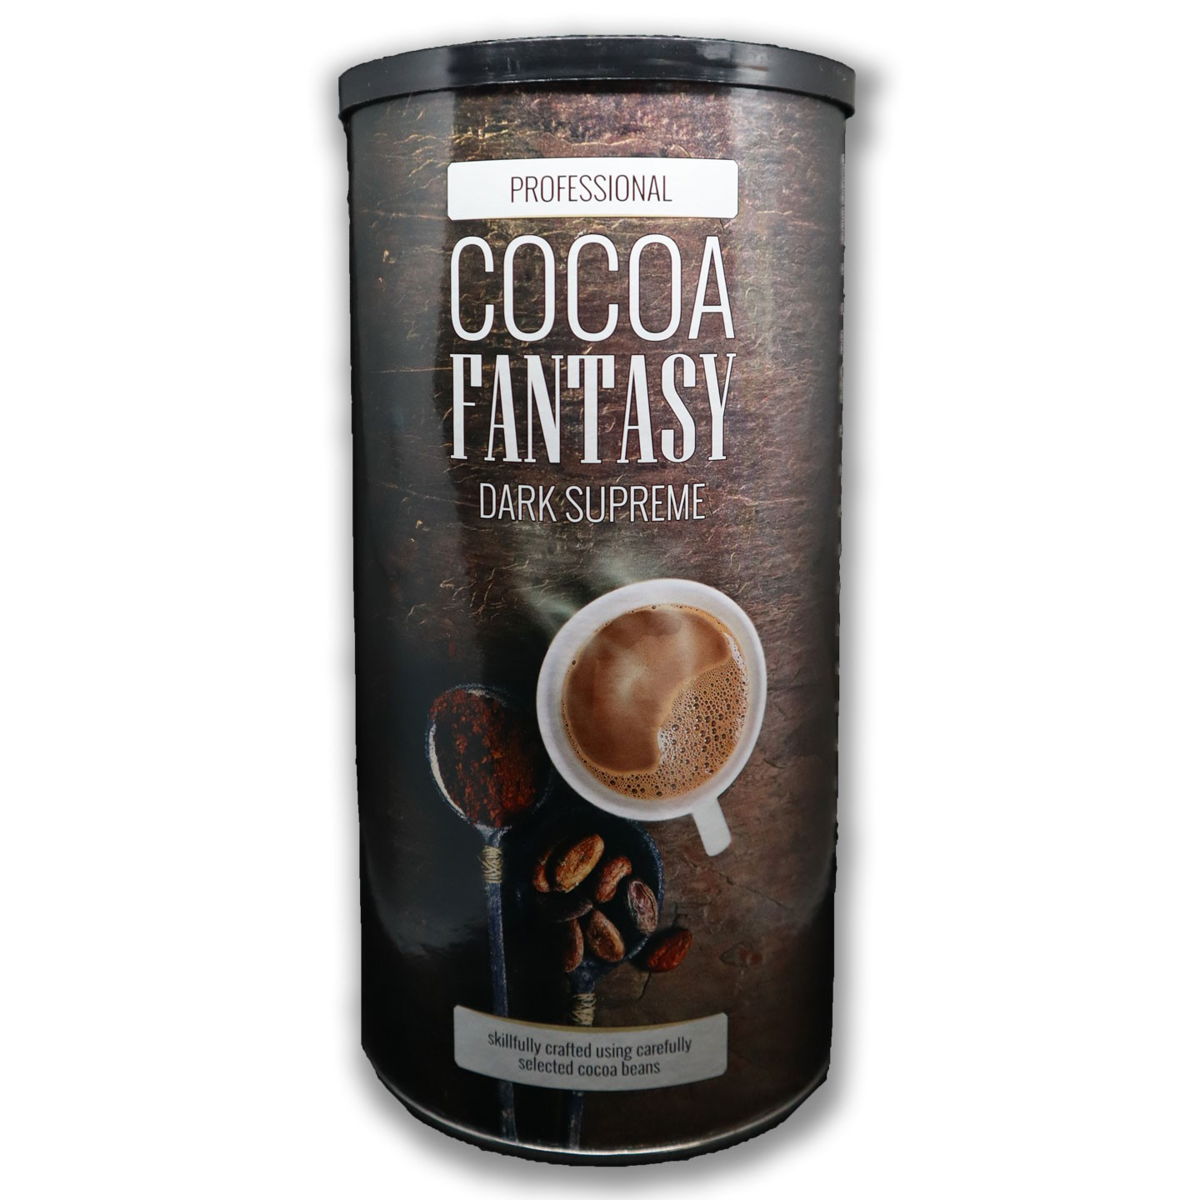 Professional Cocoa Fantasy Dark Supreme